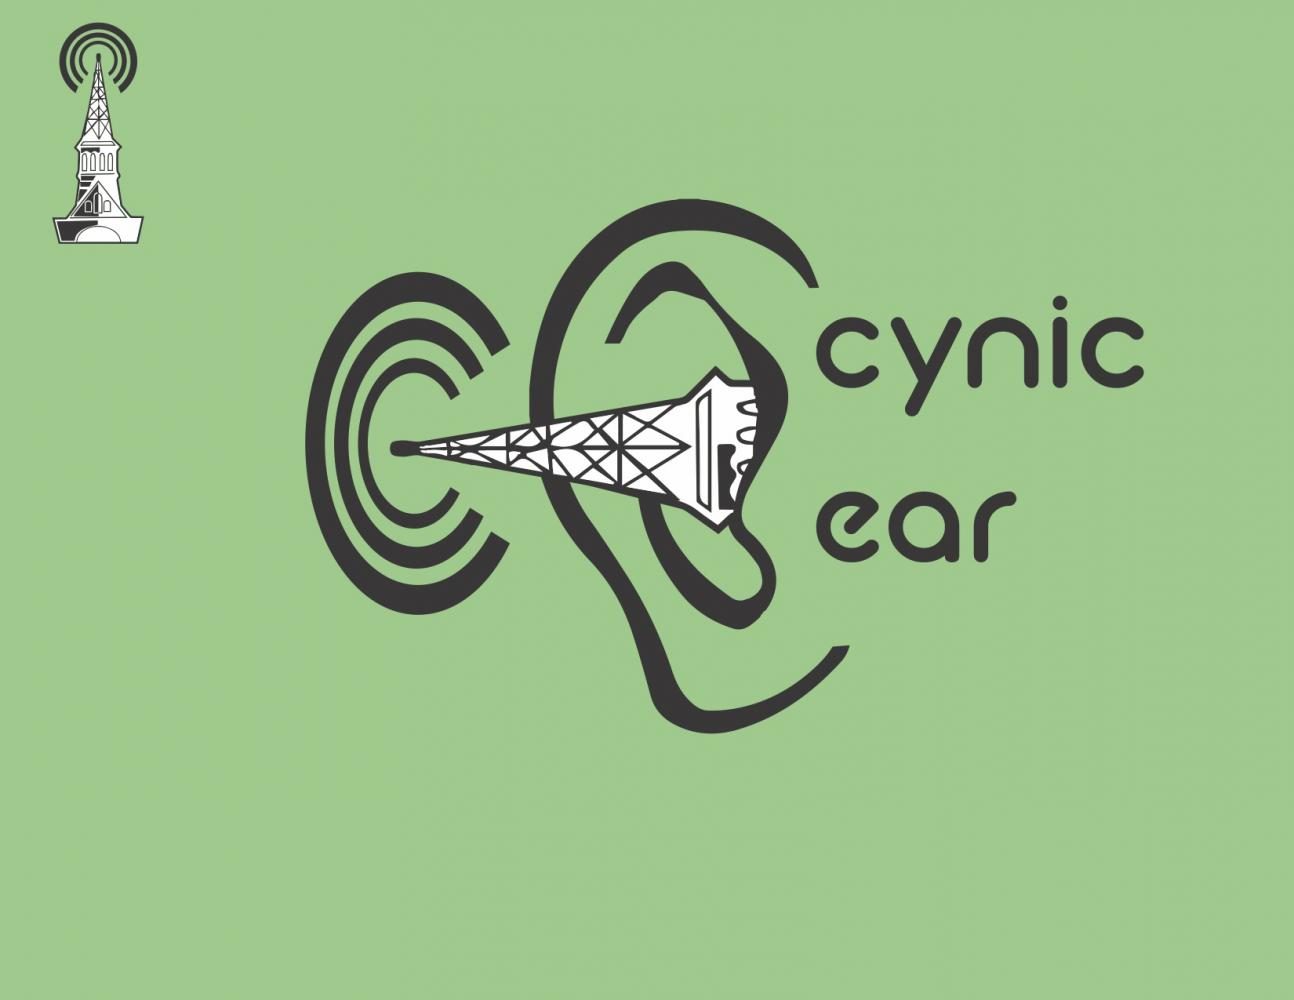 Cynic Ear- Abroadcast